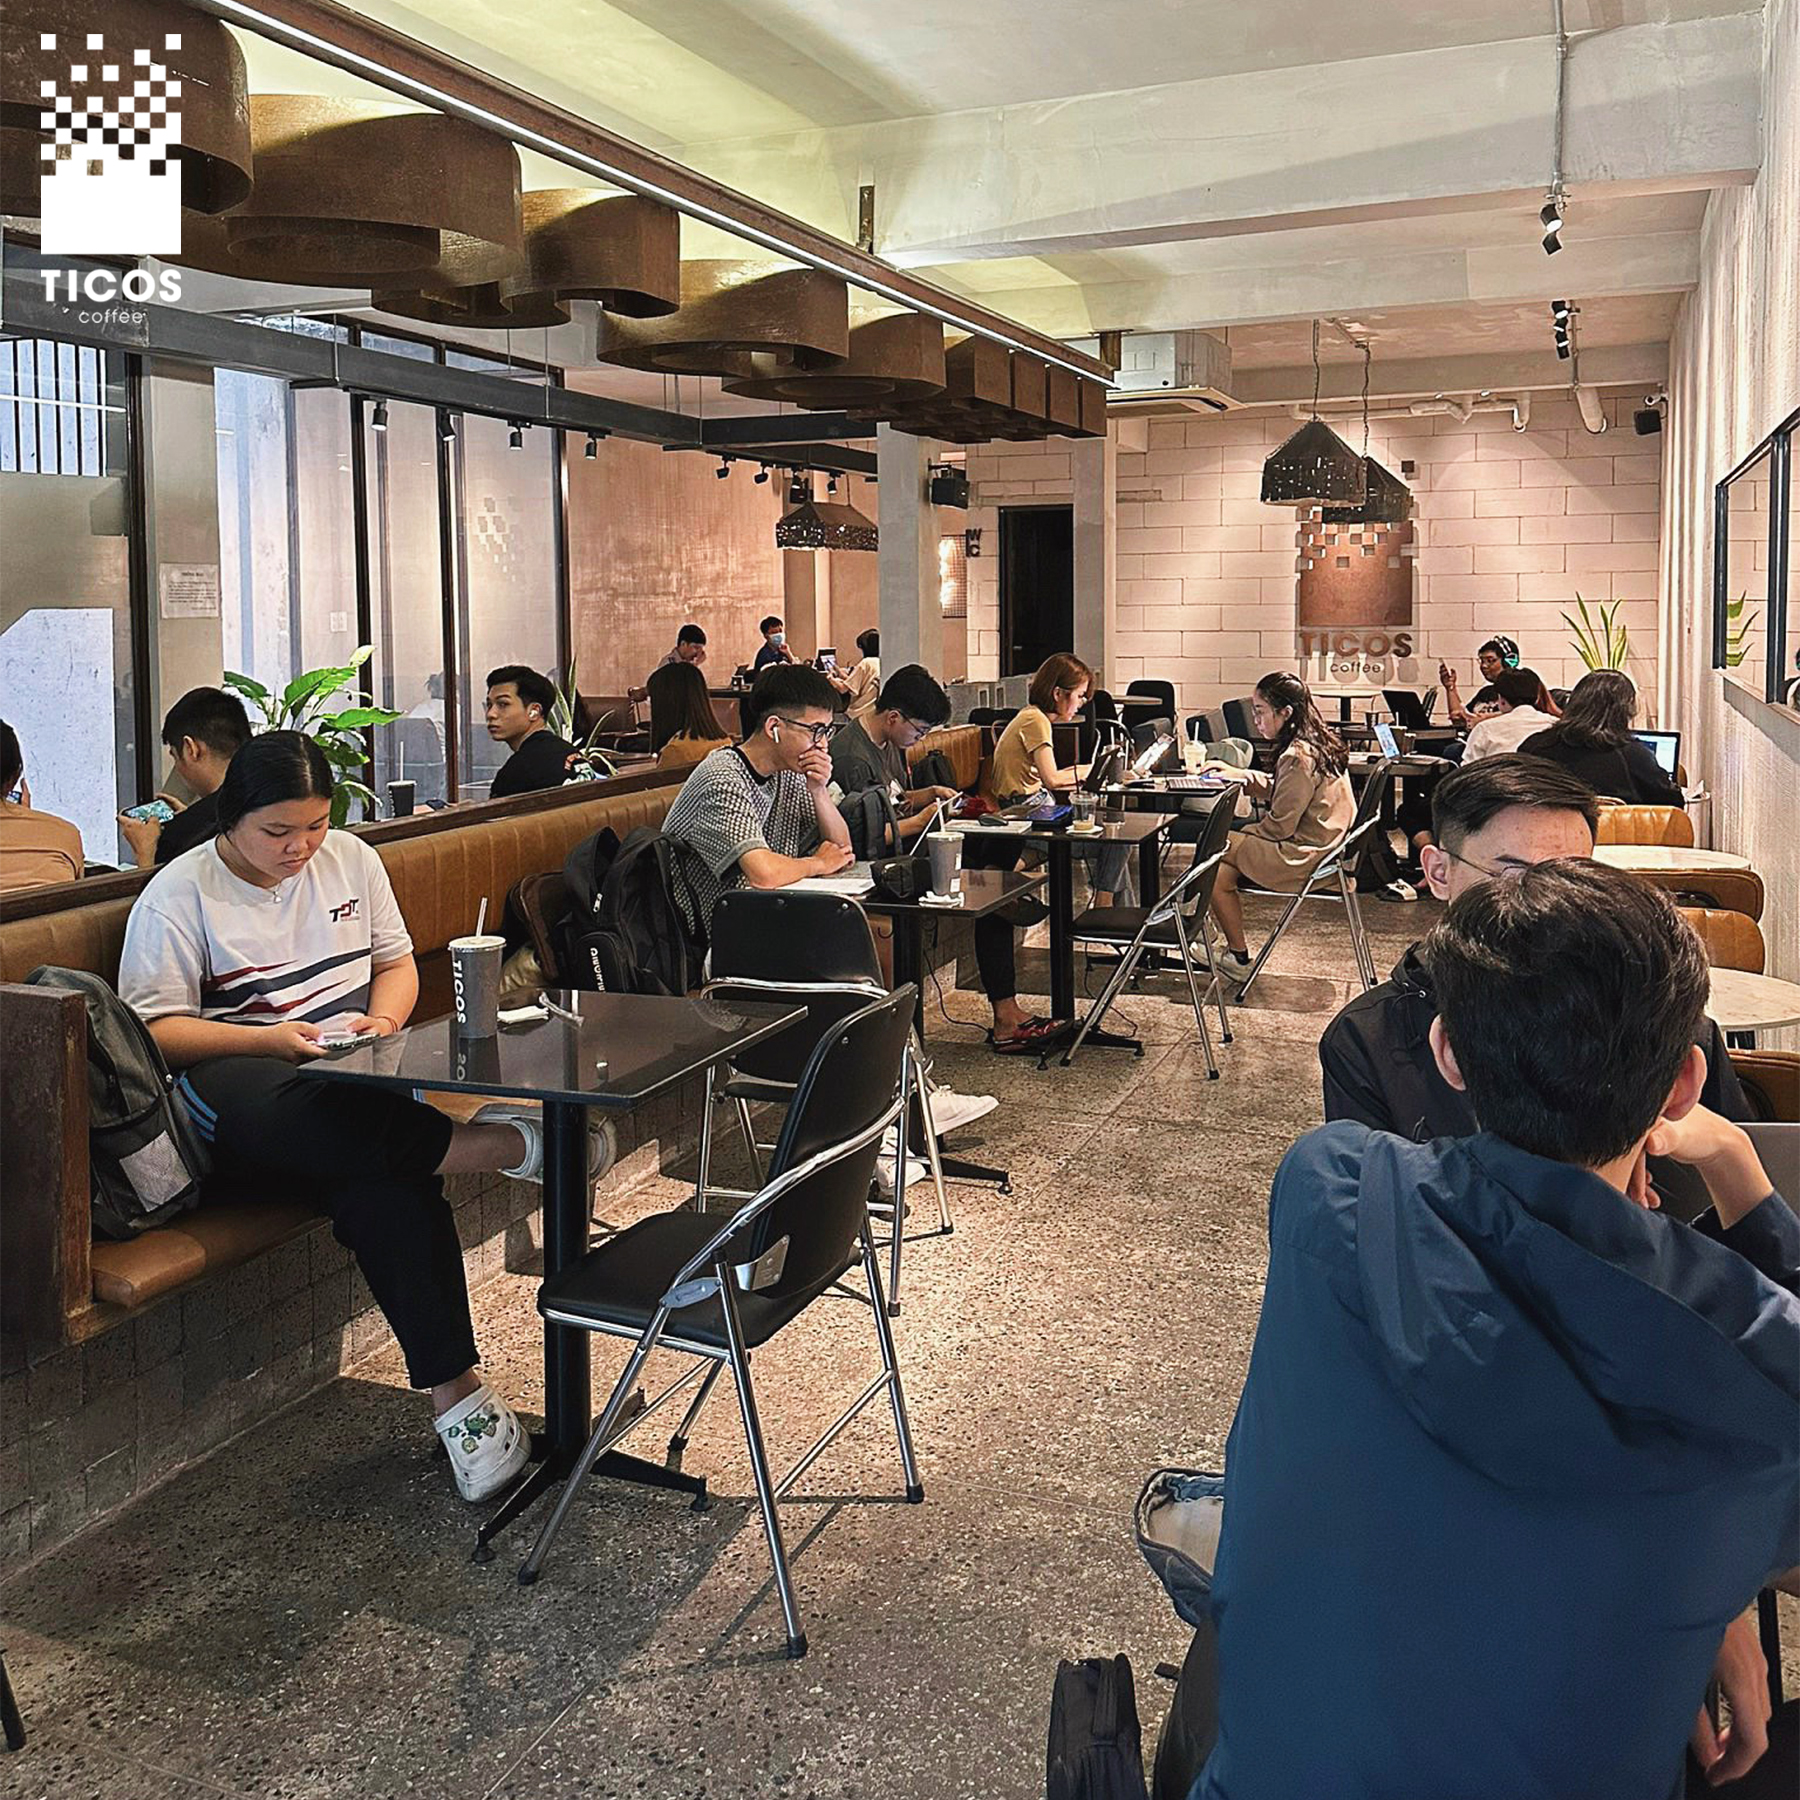 Ticos Coffee Gò Vấp thu hút khá đông các bạn học sinh, sinh viên đến học bài